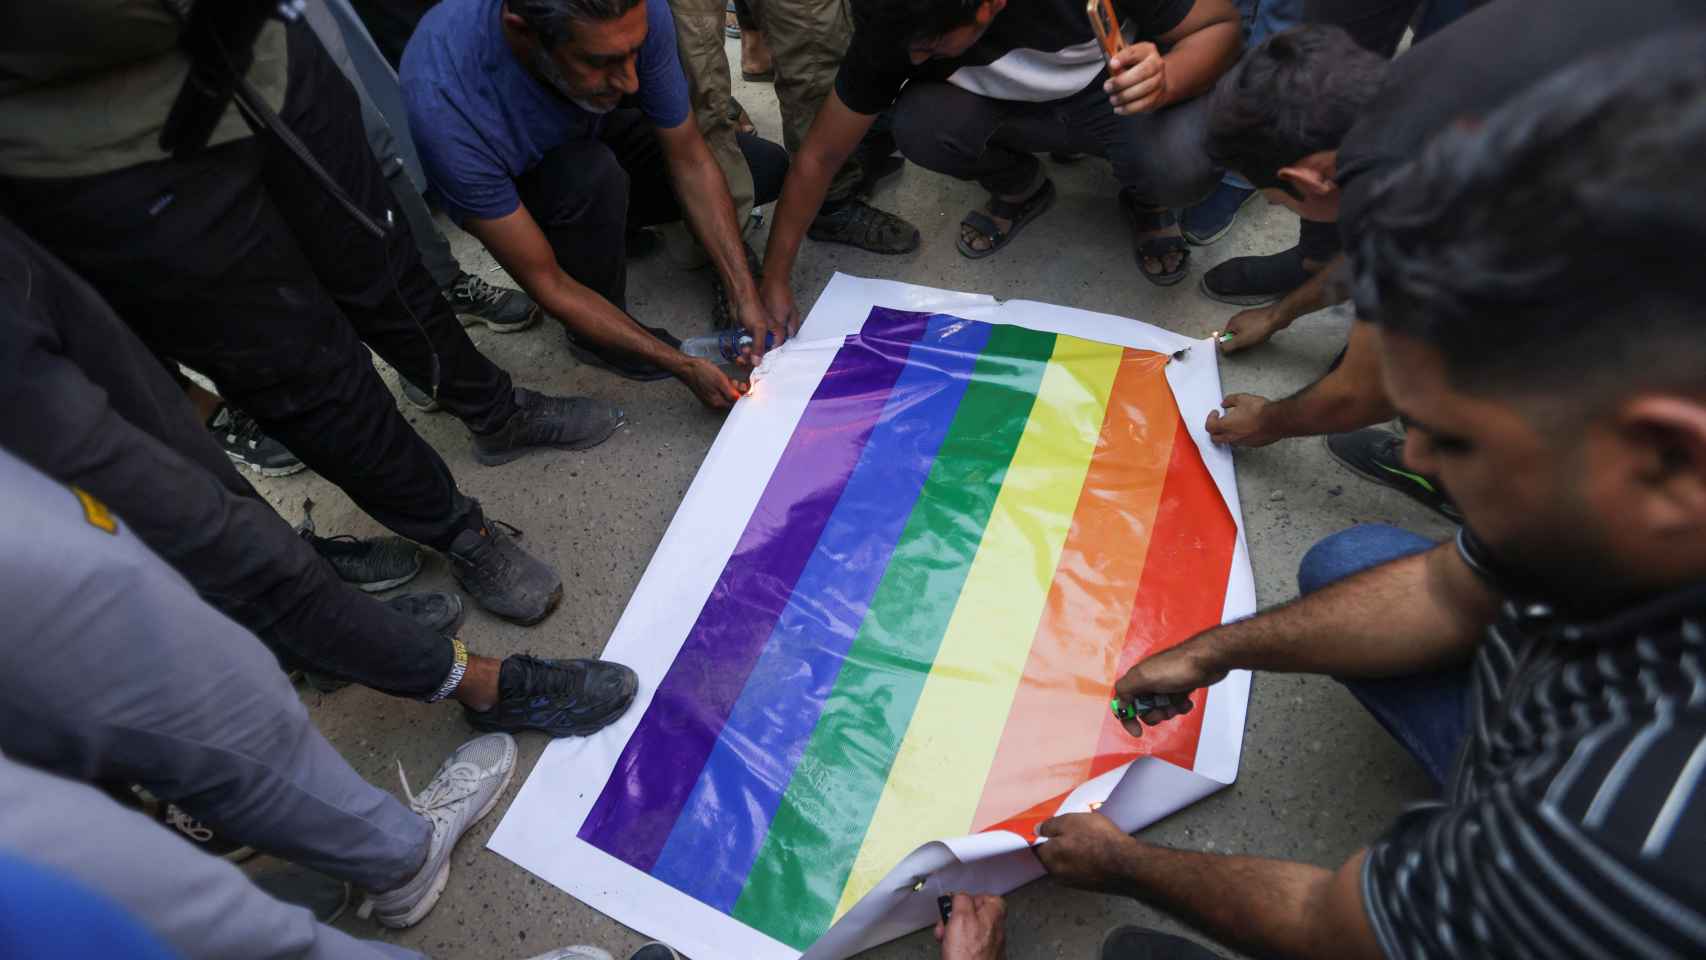 Los manifestantes tratan de quemar una pancarta con la bandera LGBTQ cerca de la embajada sueca en Bagdad.